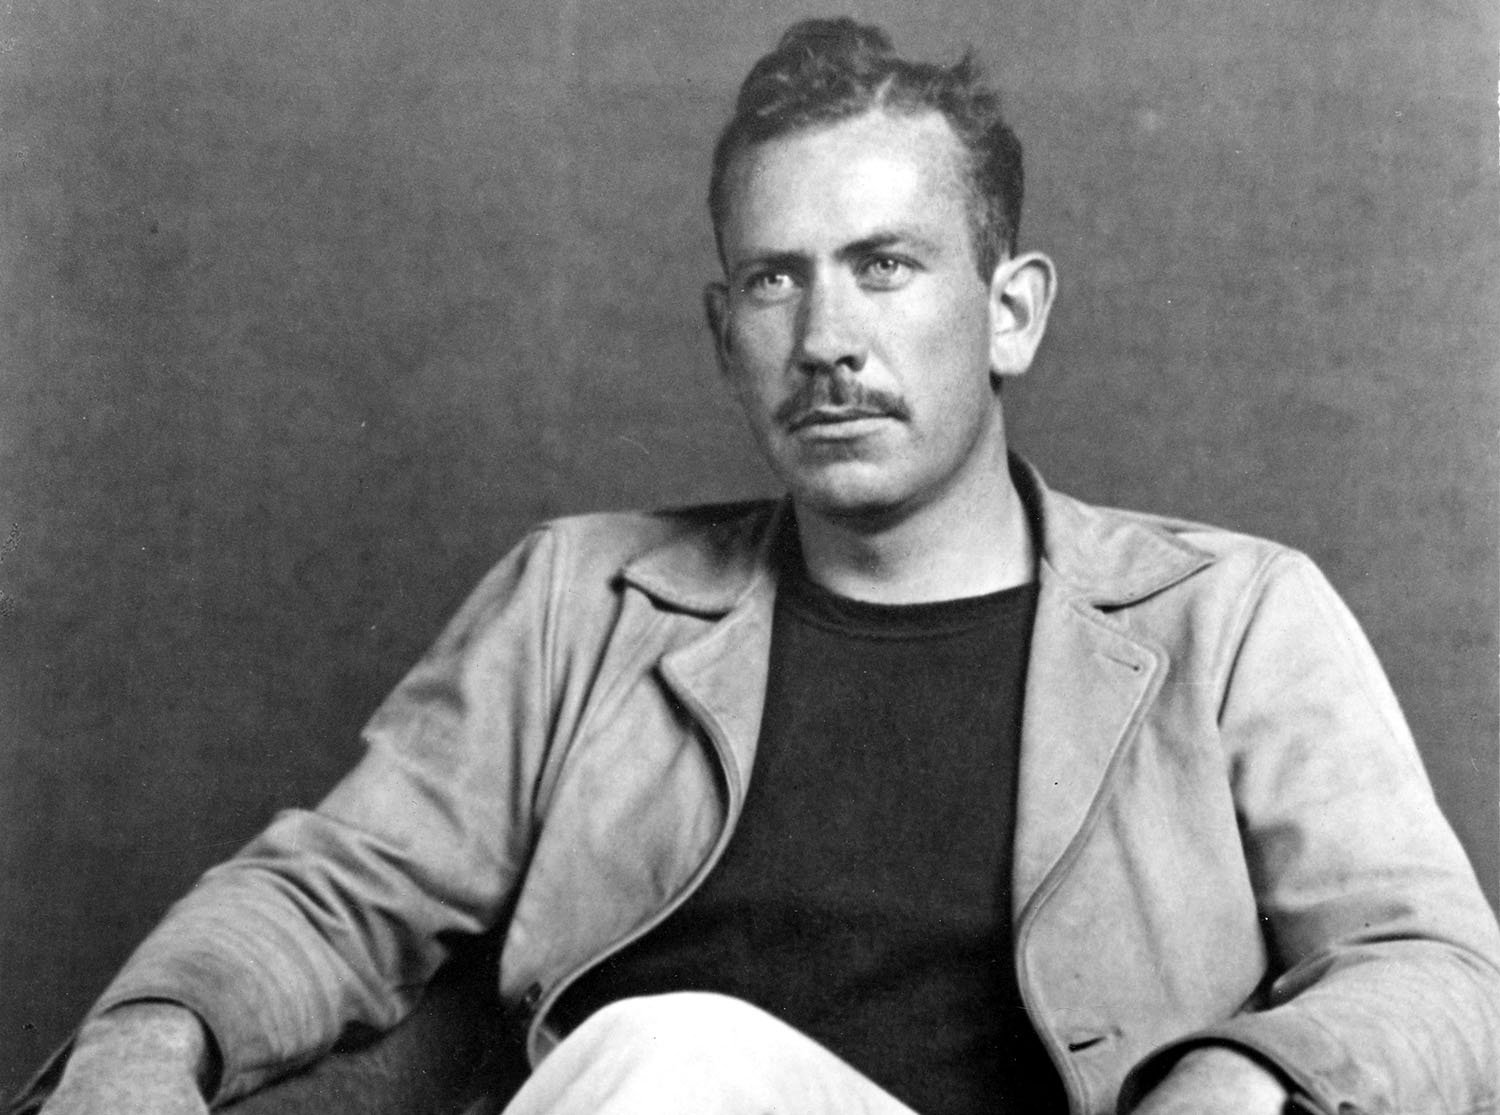 Un día como hoy, en 1968, murió John Ernst Steinbeck, Premio Nobel de Literatura 1962 y uno de los mayores exponentes de la narrativa del siglo XX